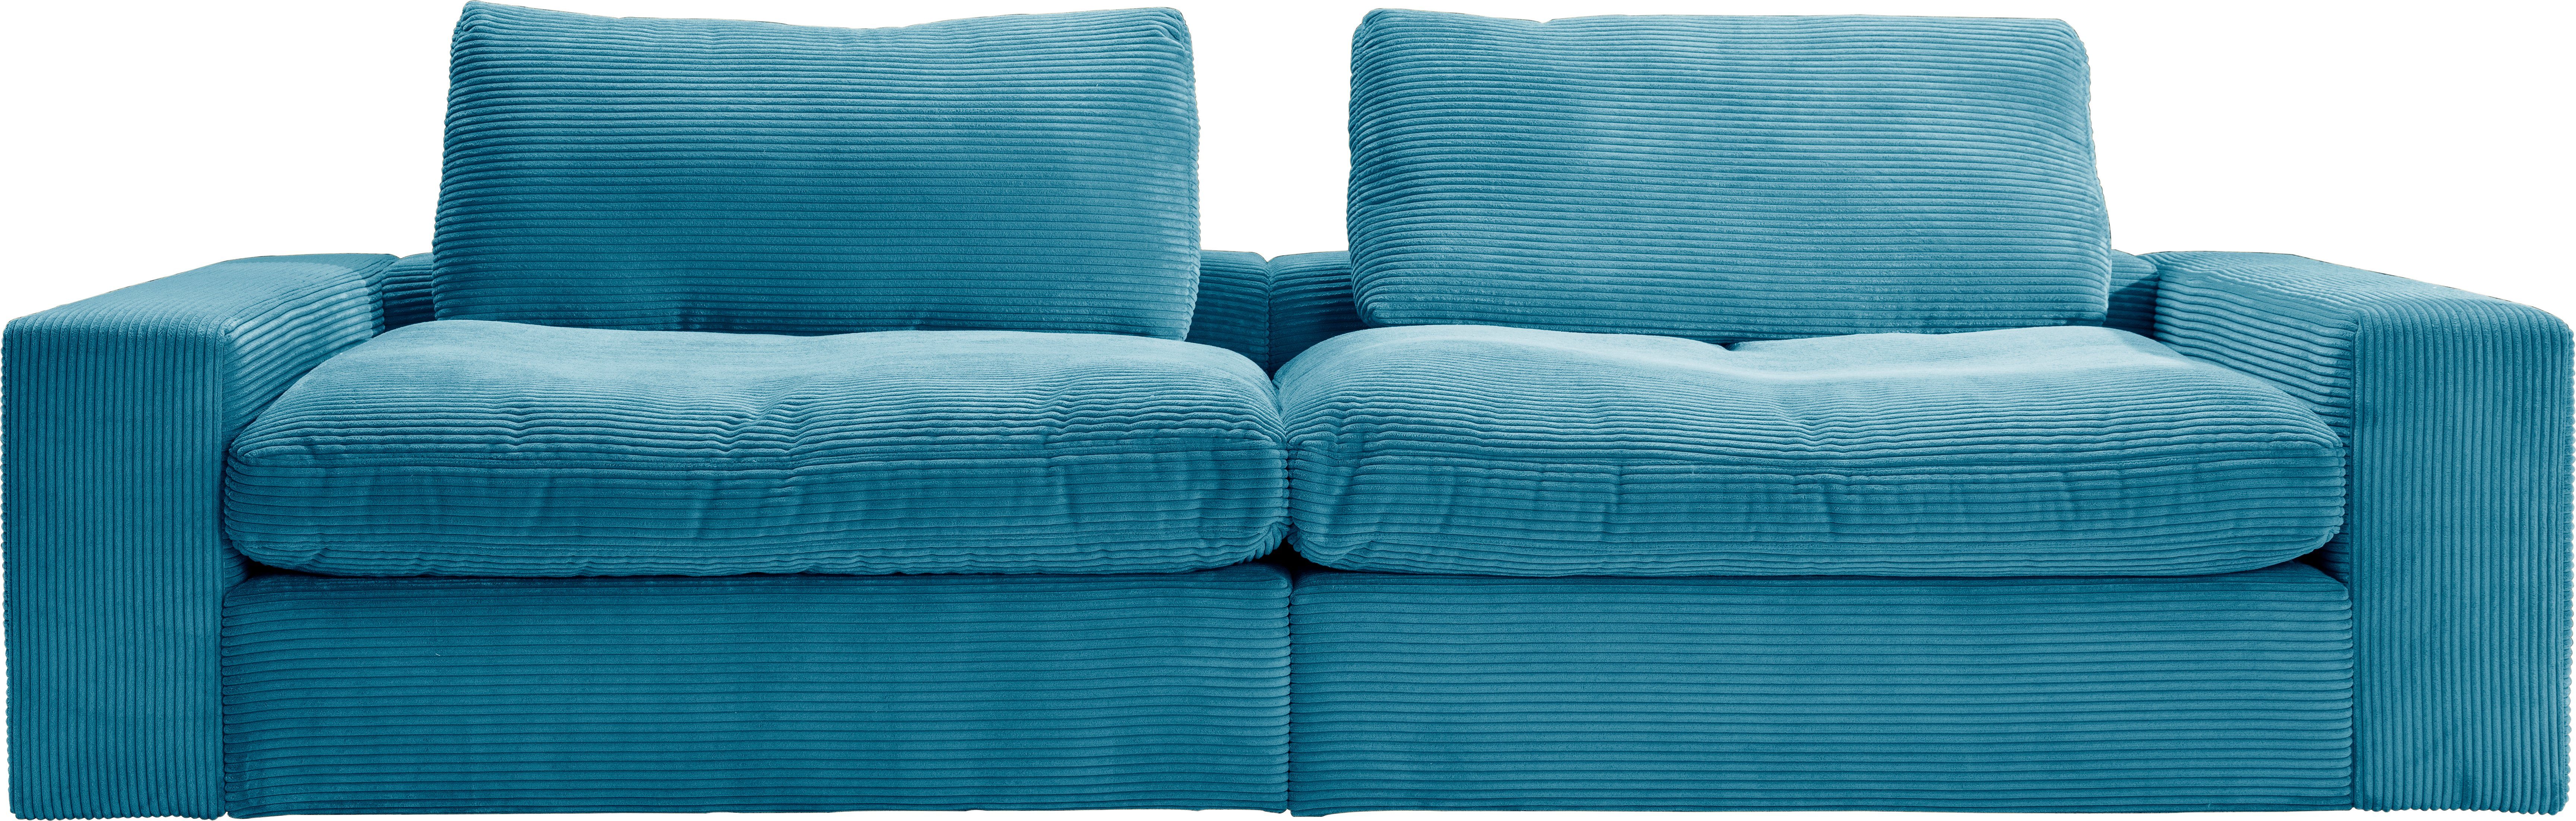 Hellblaue Big Sofas online kaufen | OTTO